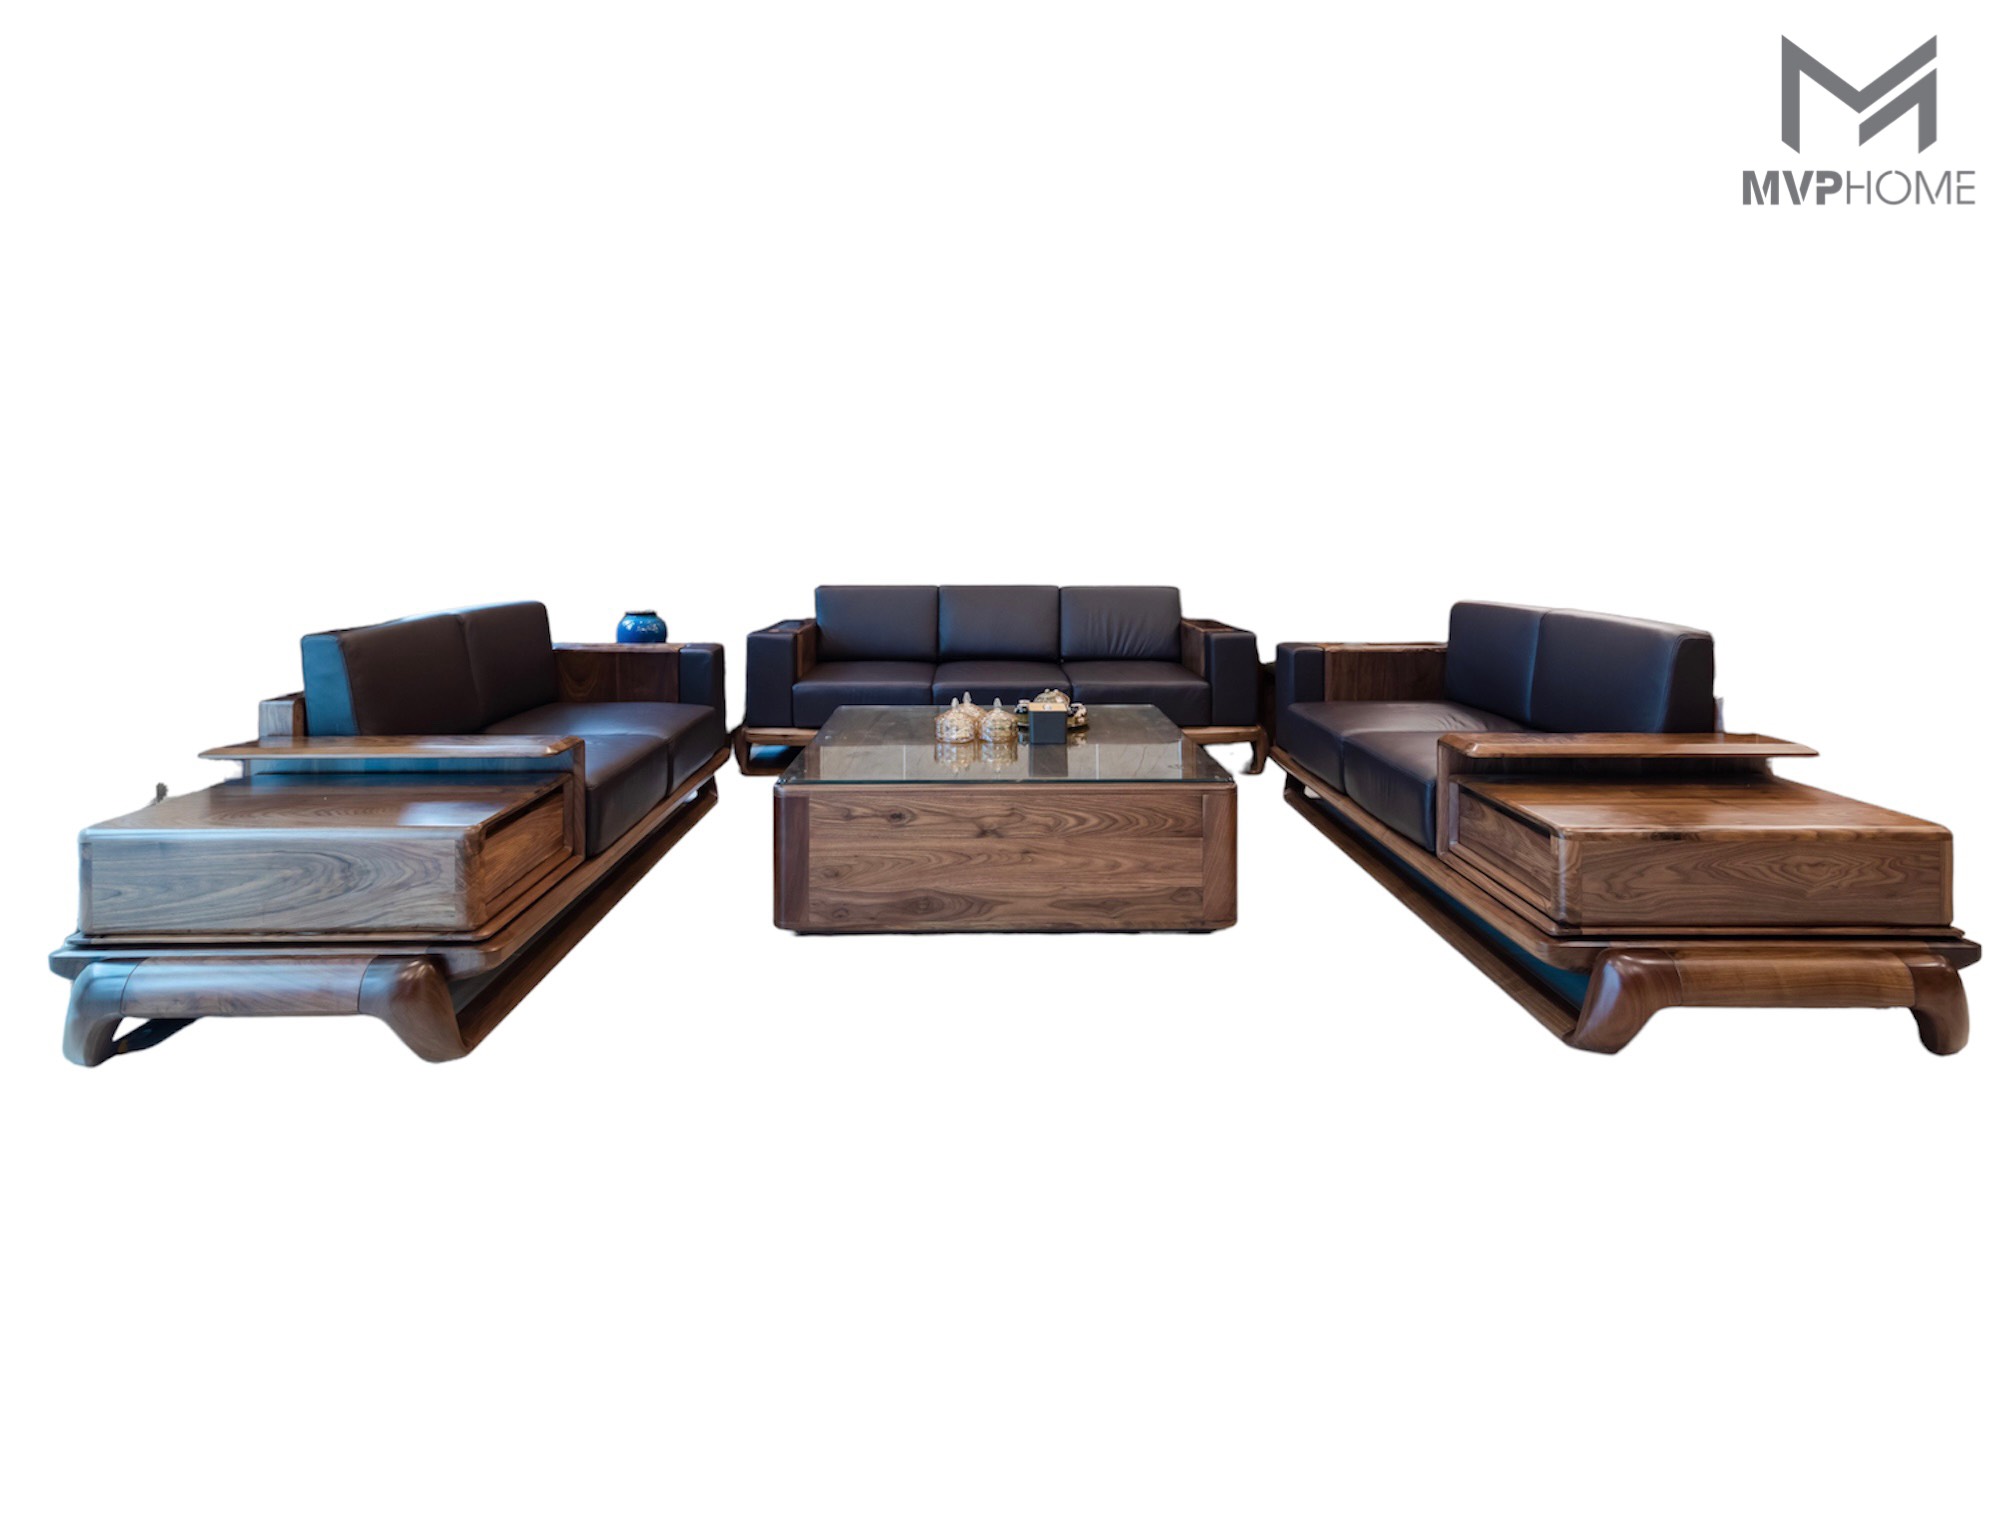 Sofa gỗ chữ U hiện đại sẽ là sự lựa chọn ấn tượng cho phòng khách ngôi nhà của bạn vào năm